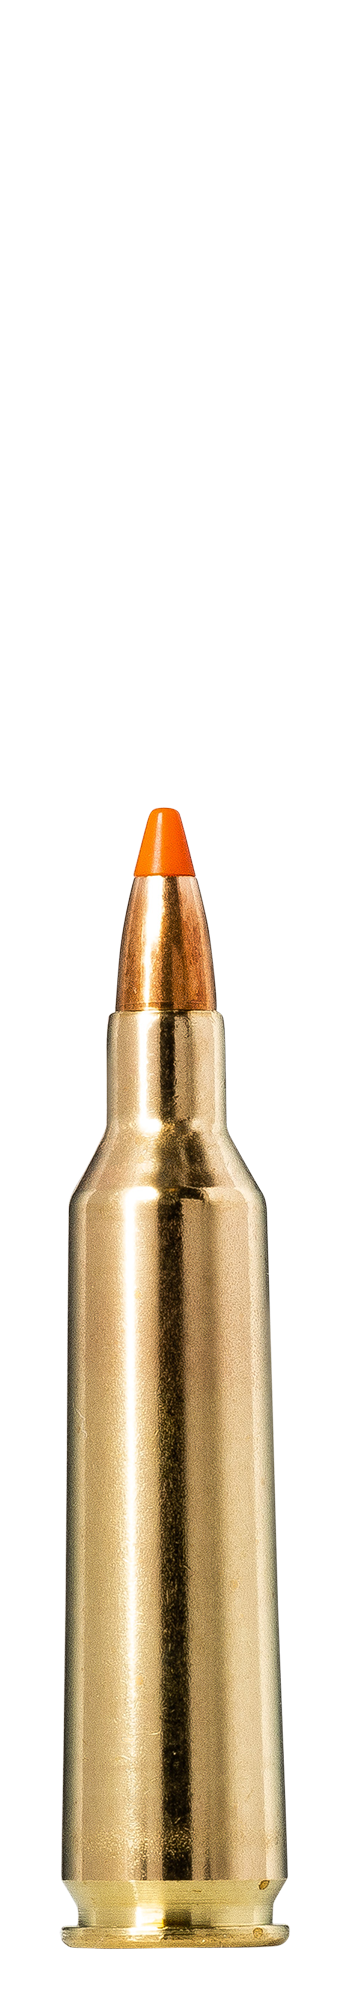 Norma 22-250 Rem. 3,6 g Tipstrike Varmint